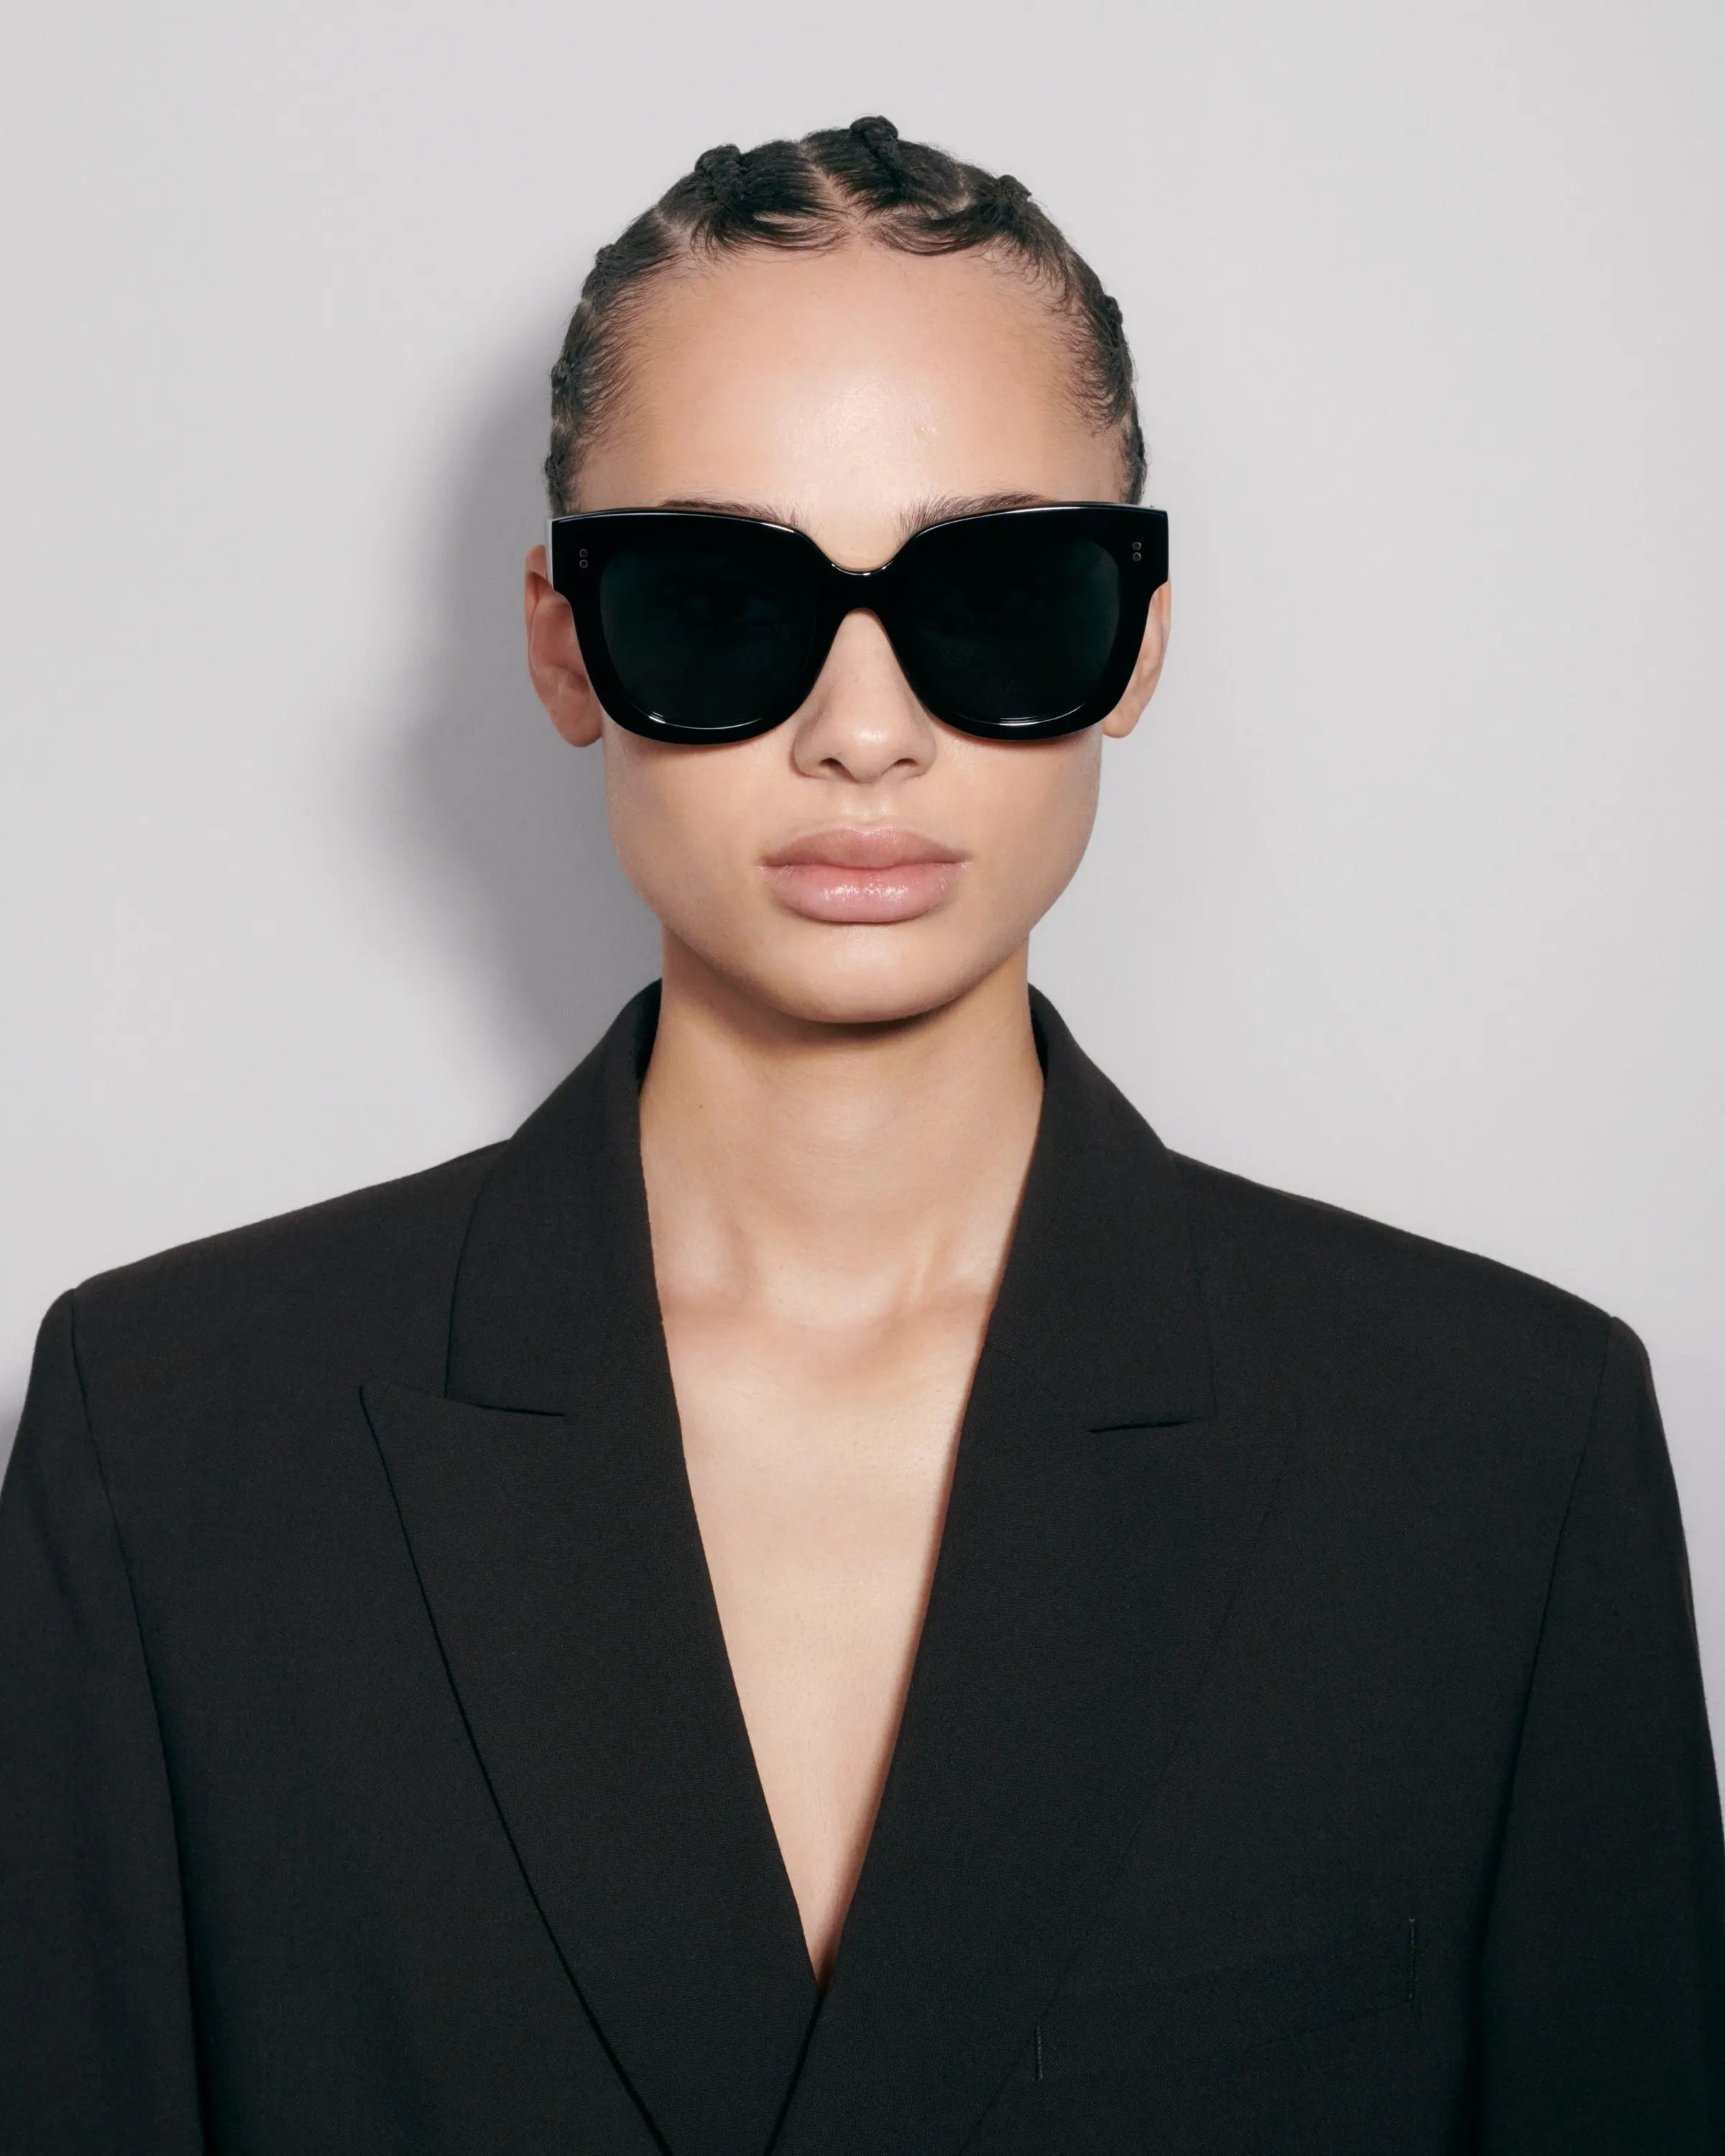 Oversized black sunglasses on model